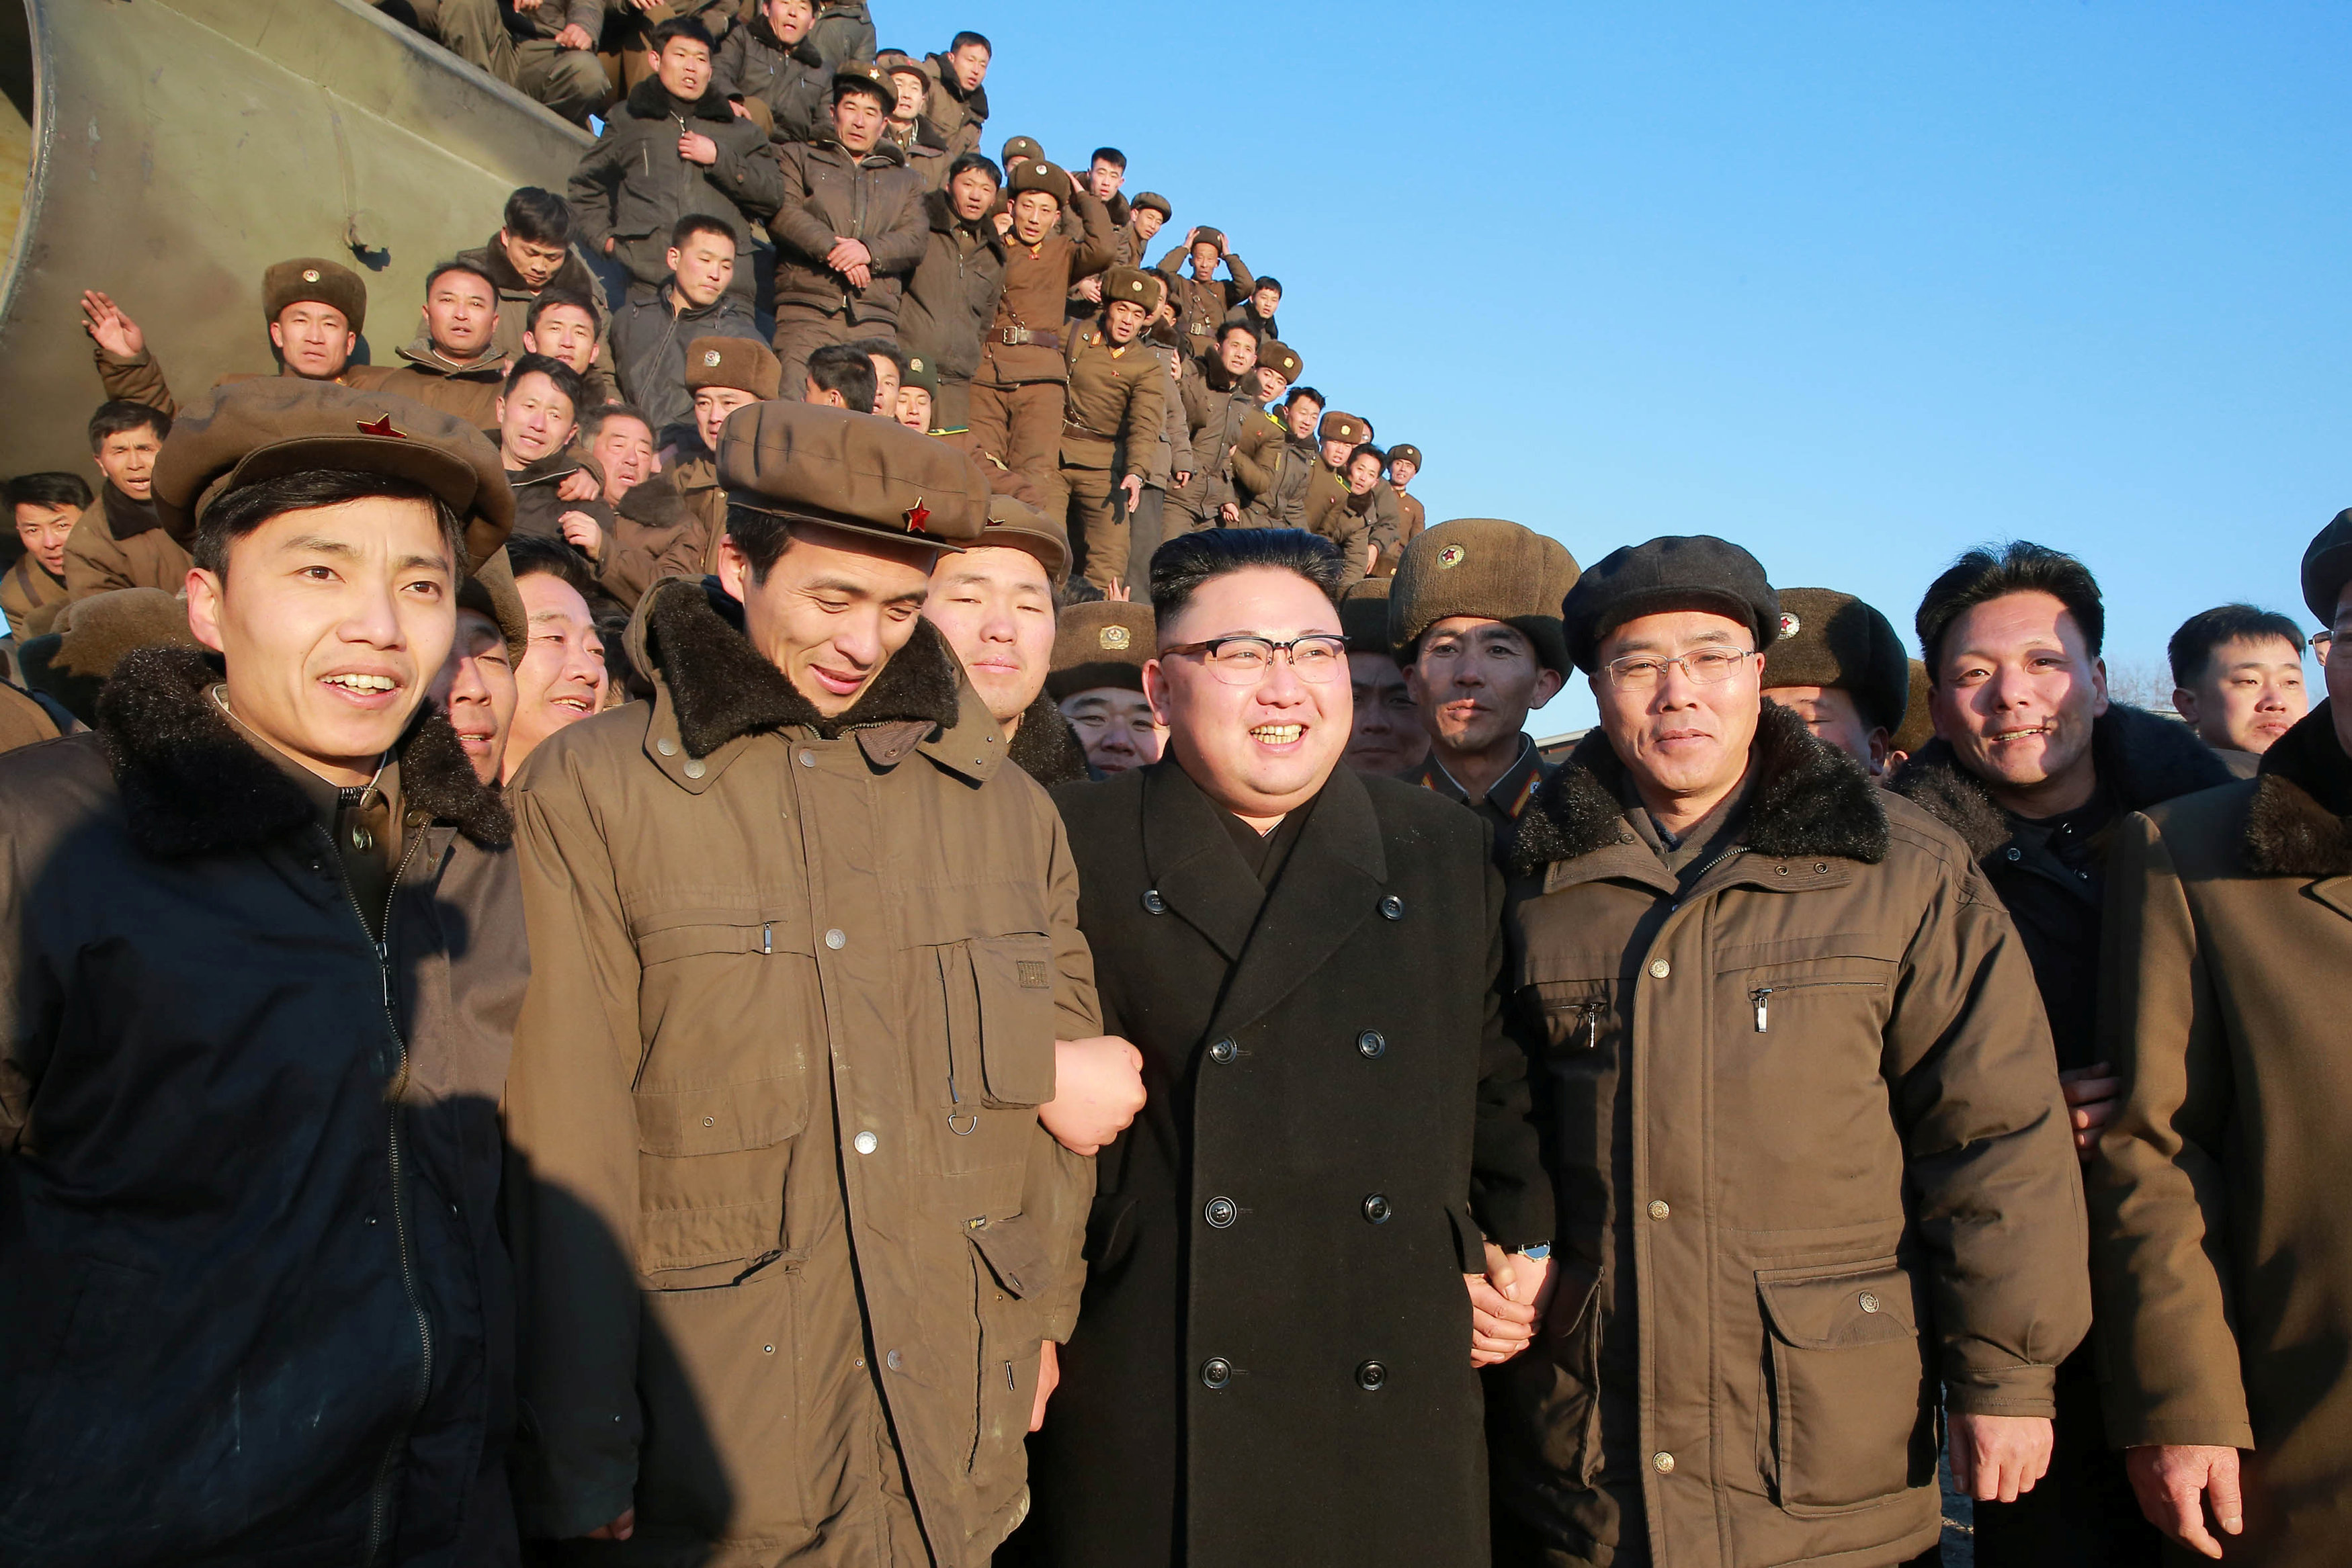 زعيم كوريا الشمالية يحتفل مع الجنود بنجاح تجربة اطلاق صاروخ باليستى